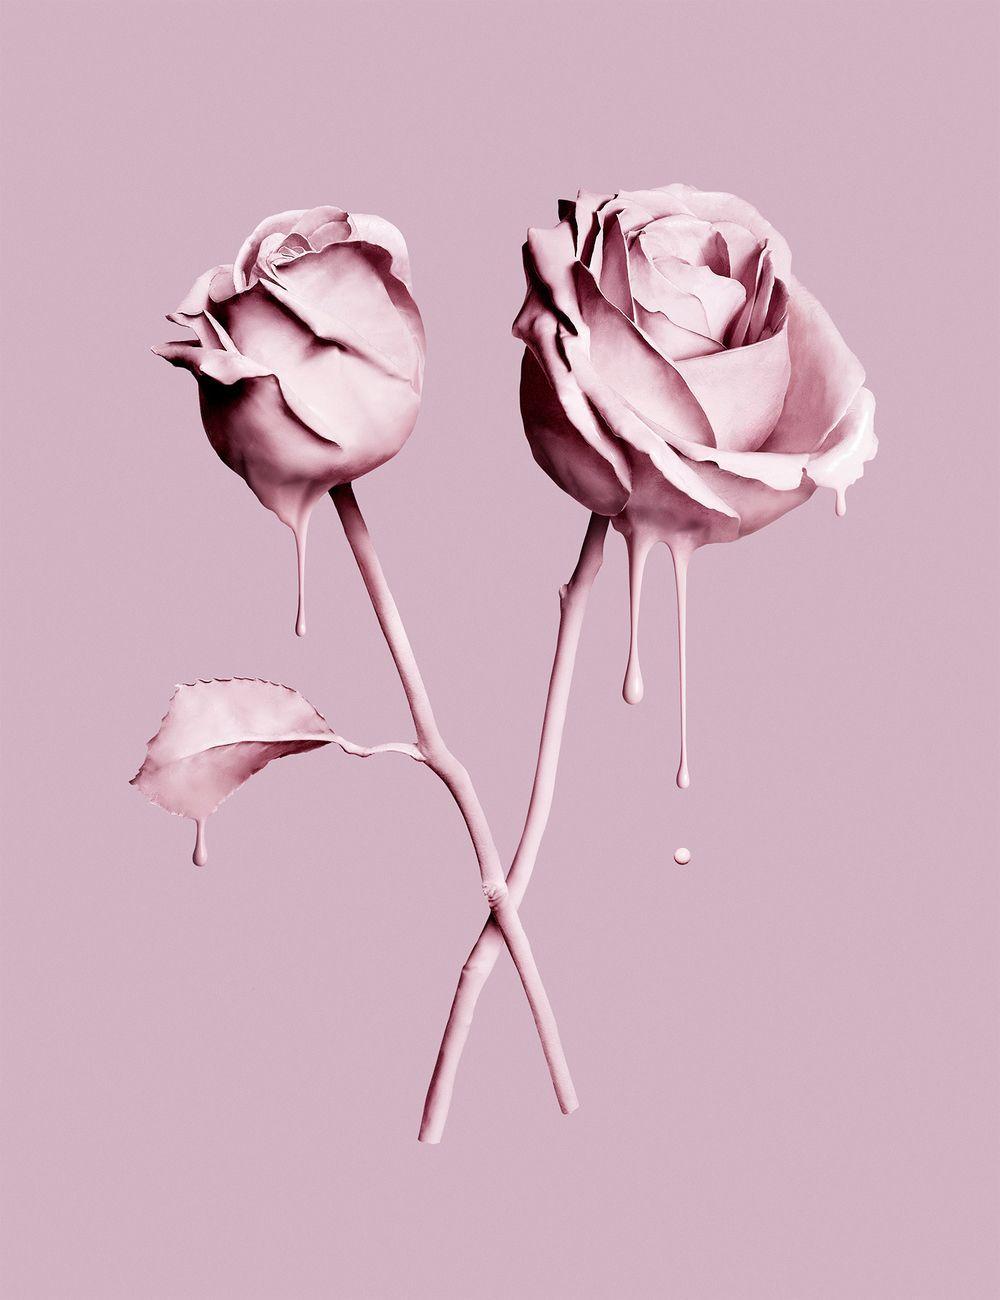 La Vie En Rose Wallpapers - Top Free La